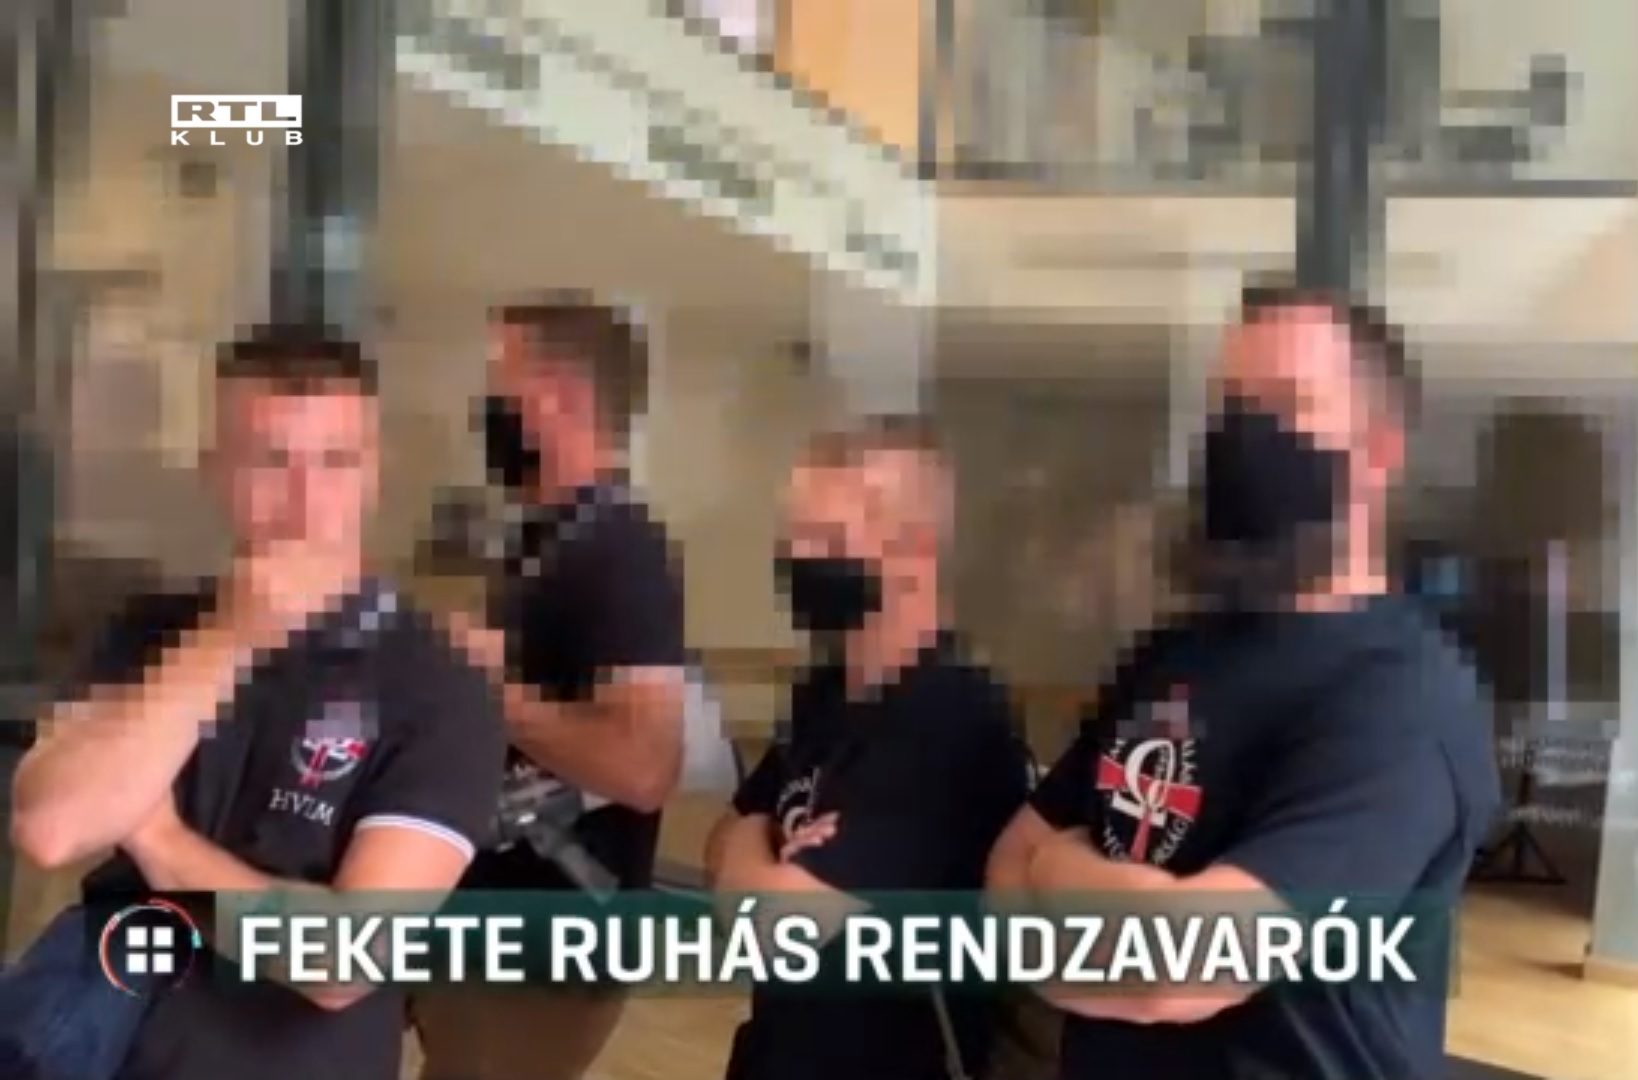 Fekete ruhás rendzavarók hőbörögtek a Budapest Pride rendezvényén